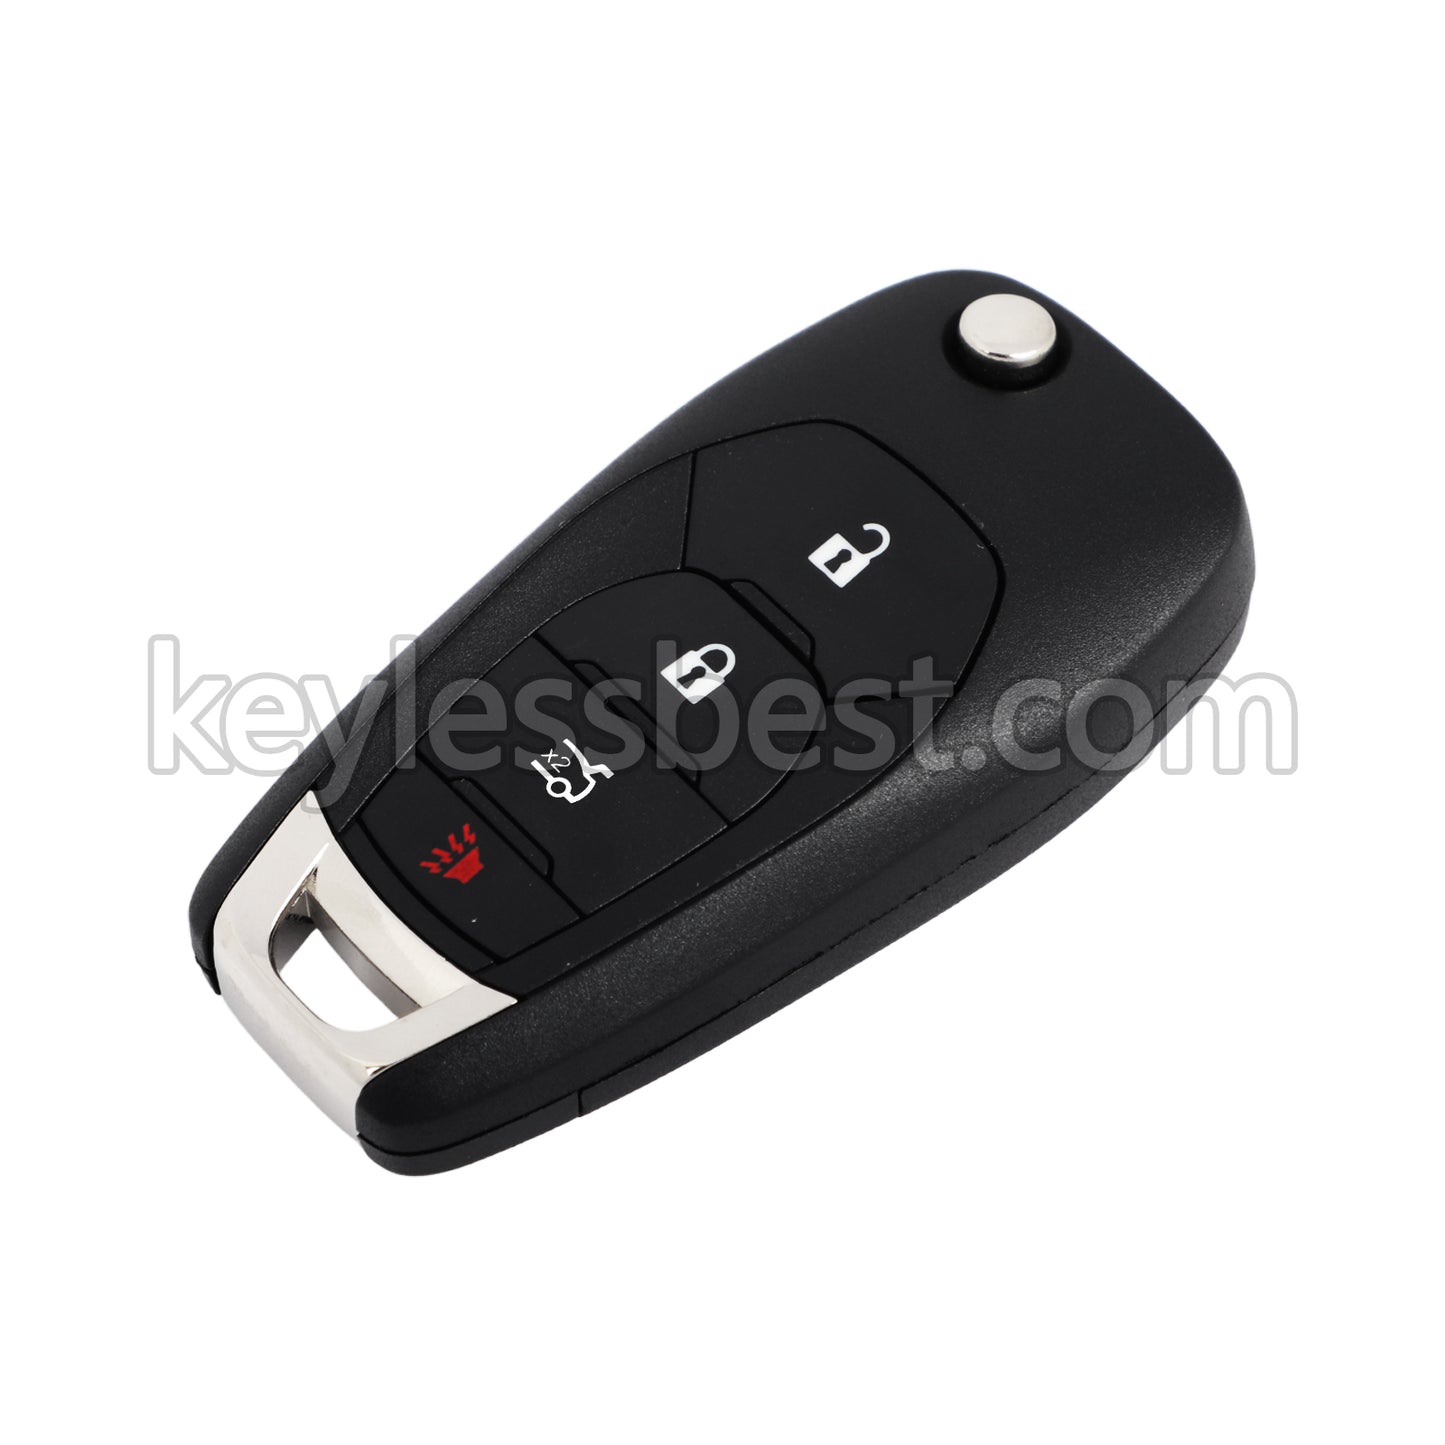 2016 - 2020 Chevrolet Cruze Sonic / 5 Buttons Remote Key / LXP-T003 / 315MHz